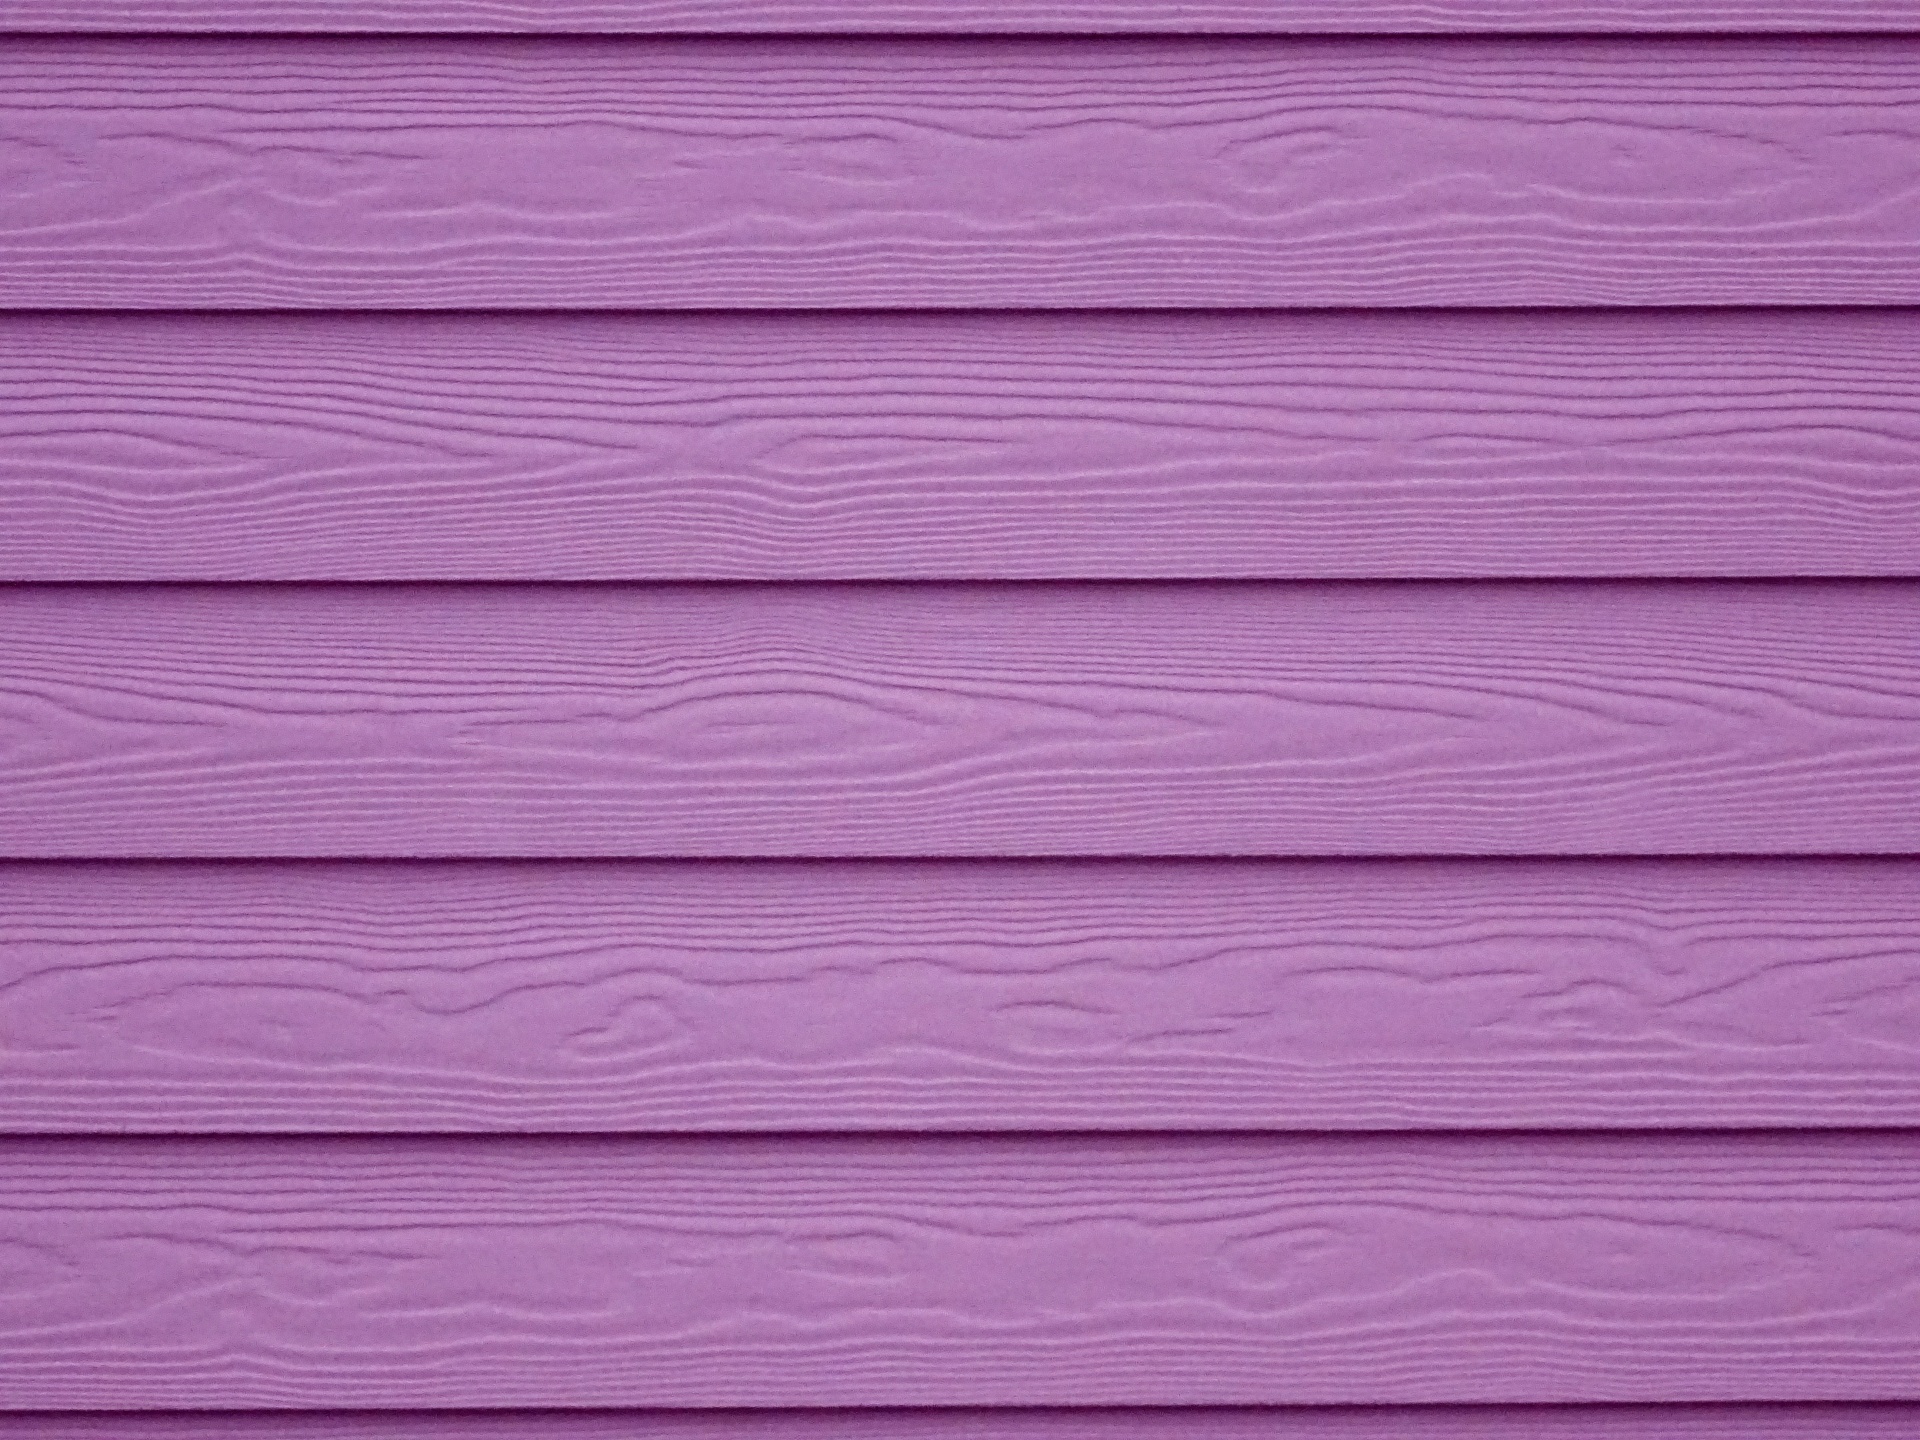 текстура, доски, фиолетовый фон, лиловый,  дерево, texture, planks, purple background, wood